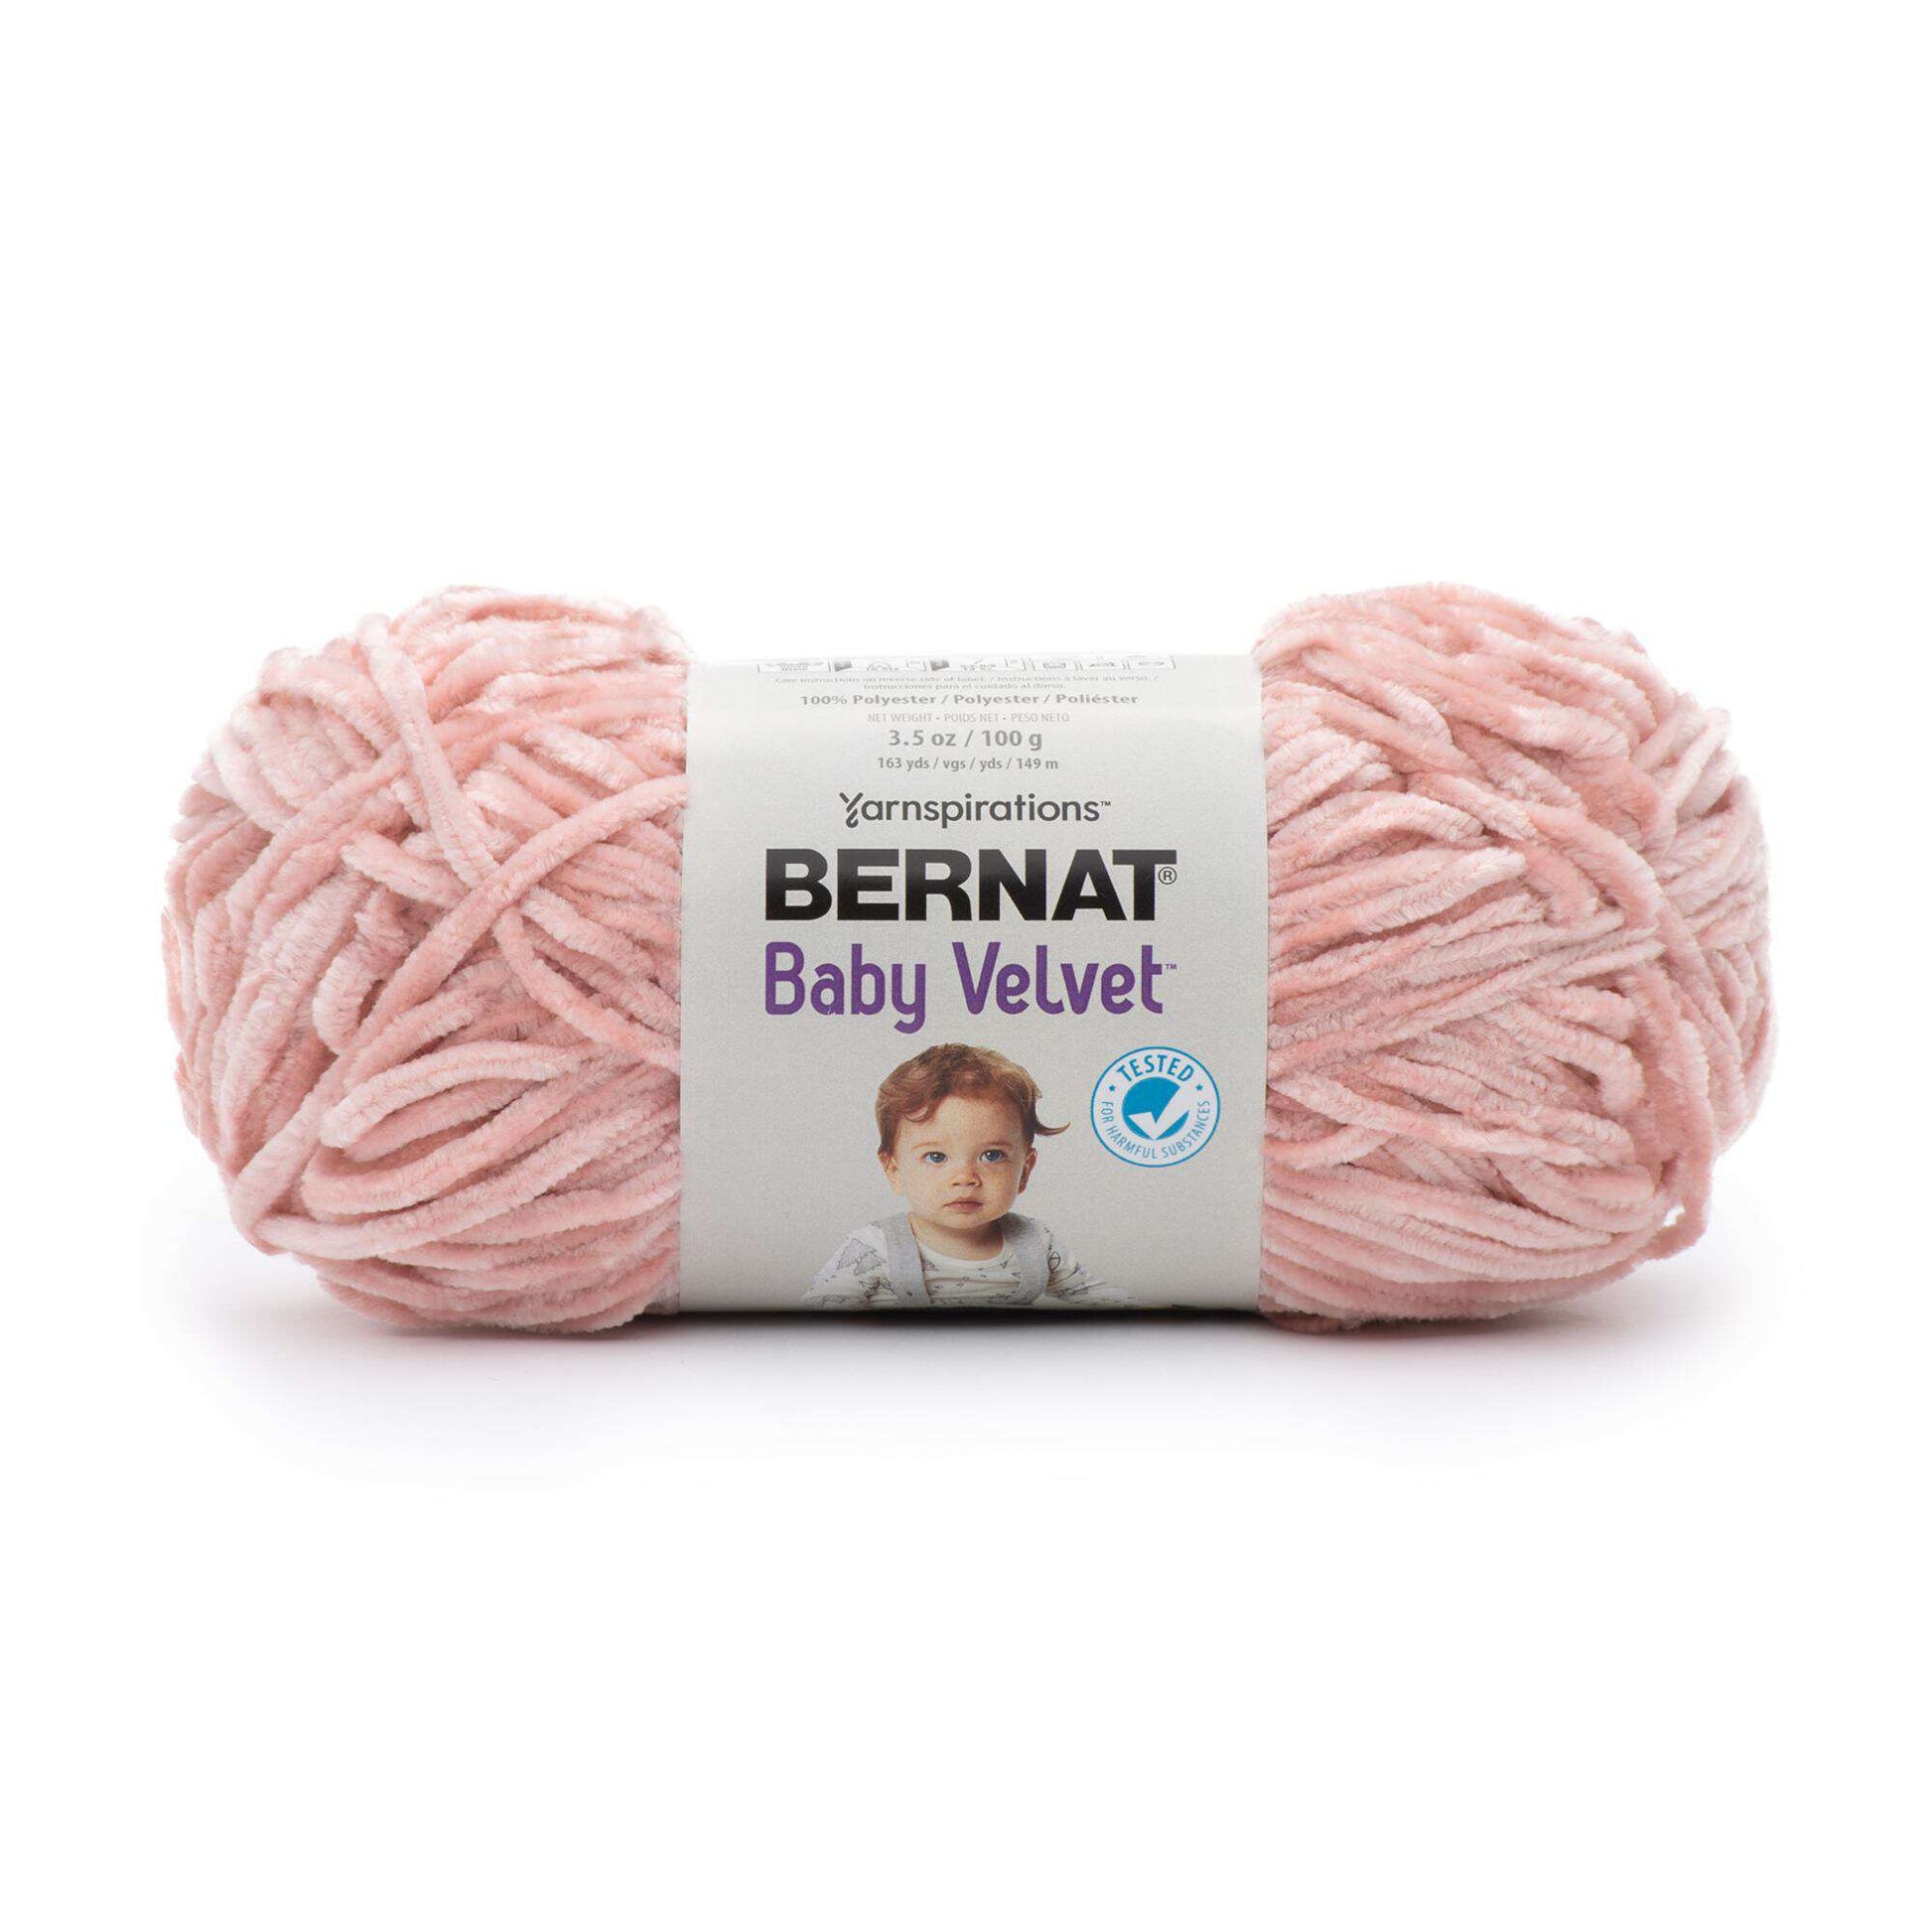  Bernat Baby Velvet Yarn - 3.5 Oz, Fairy Lavender - 3